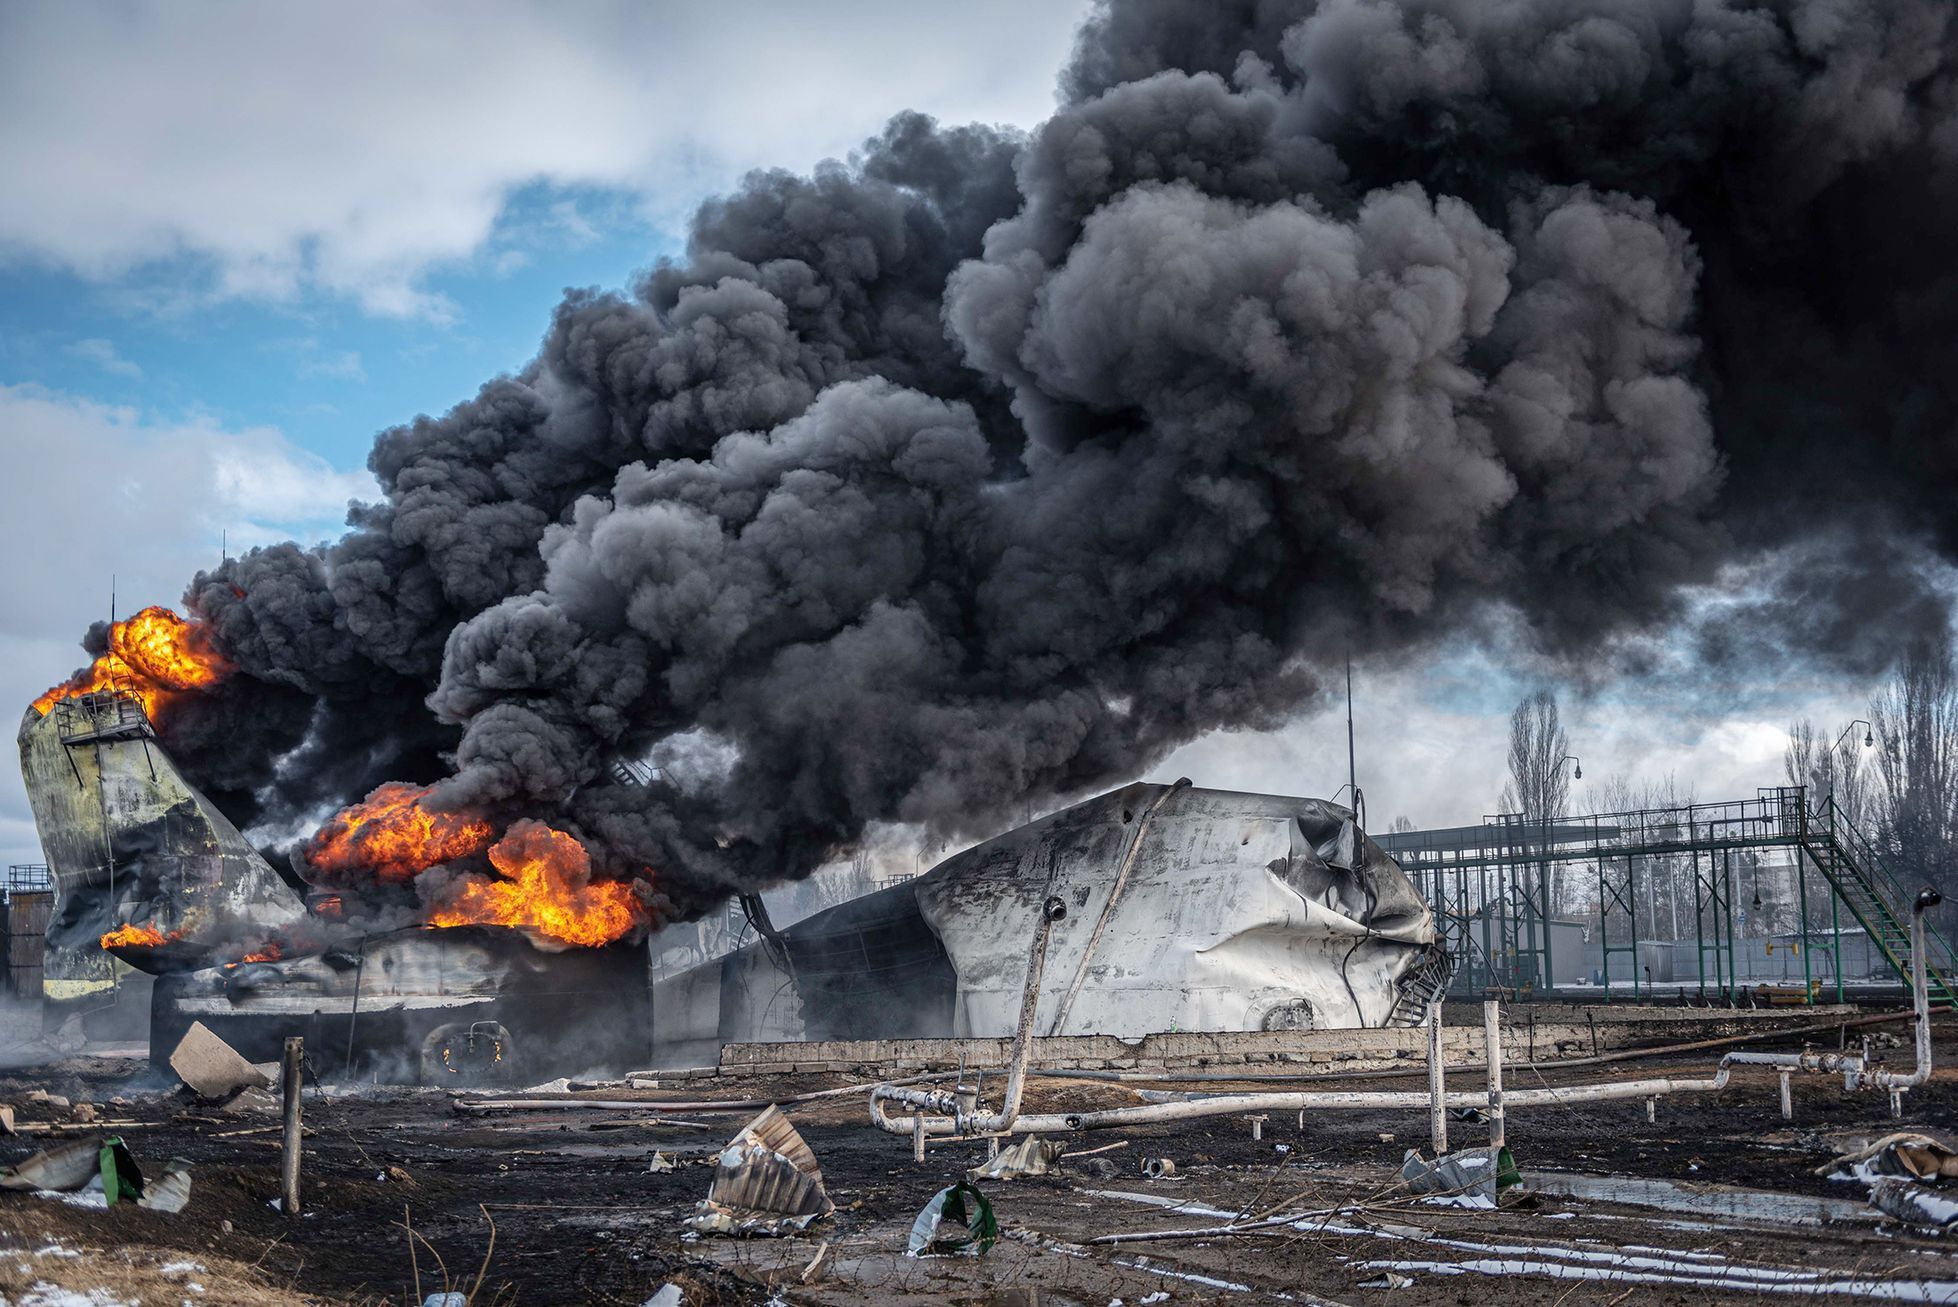 Foto / Žytomyr / 8. 3. 2022 / Požár ropného uložiště / Bombardování, trosky, požár, zkáza, průmysl / Boje na Ukrajině 2022 / Unian / Ukrajina